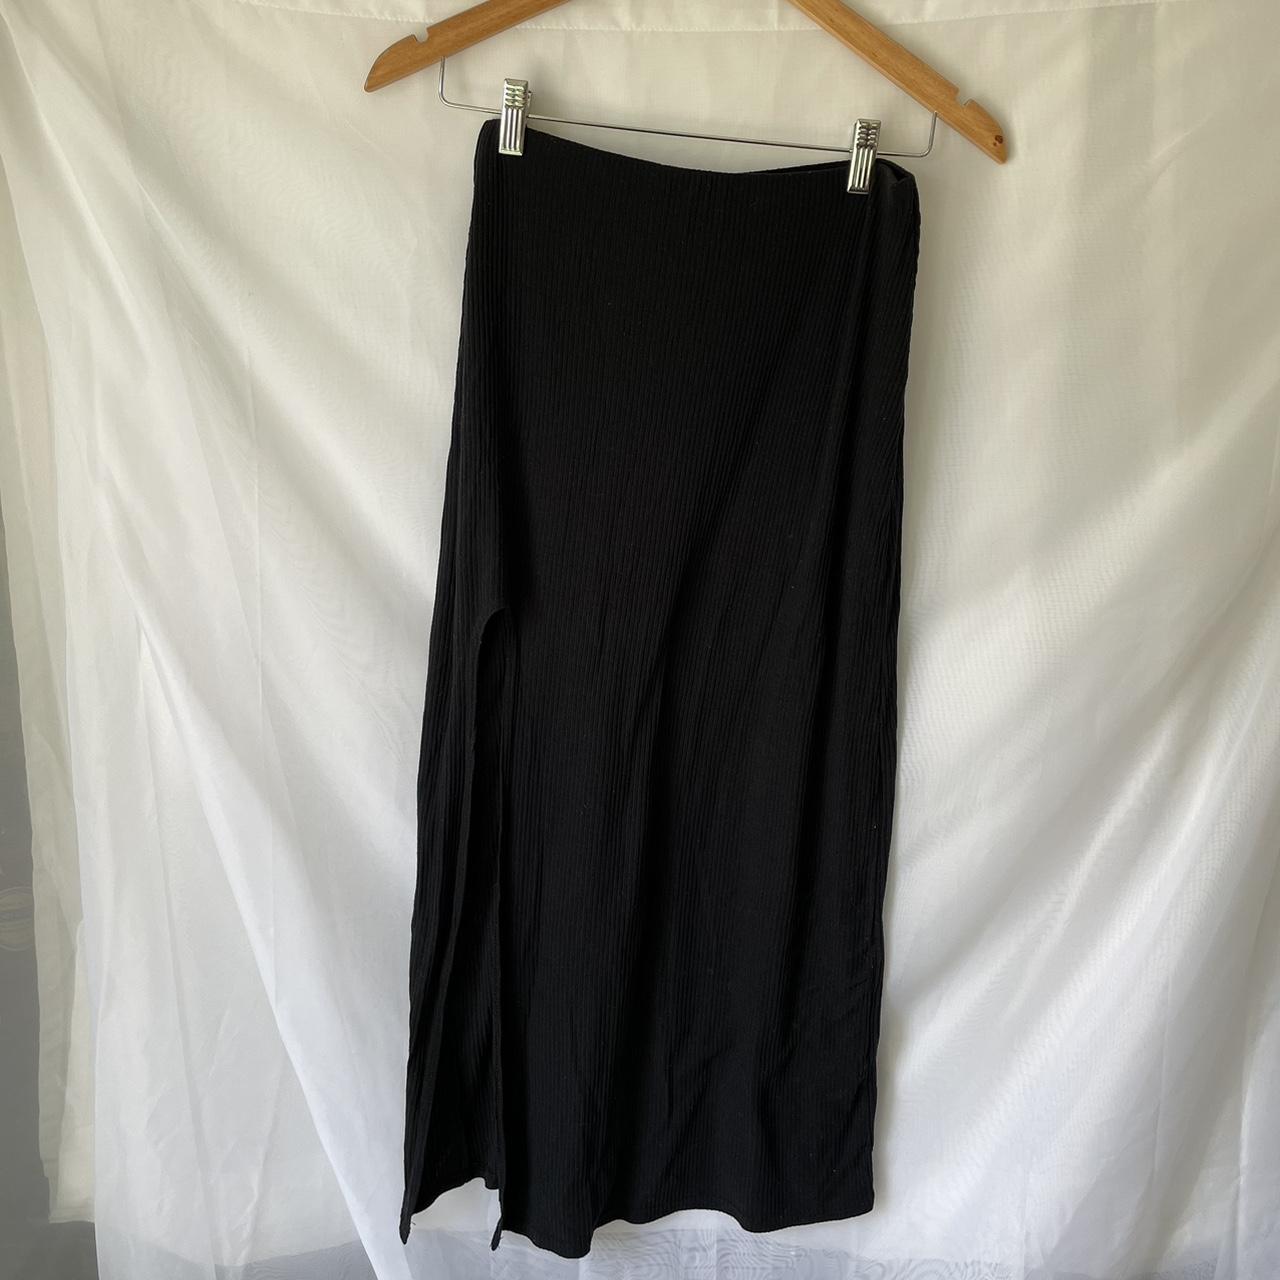 ASOS Women's Black Skirt